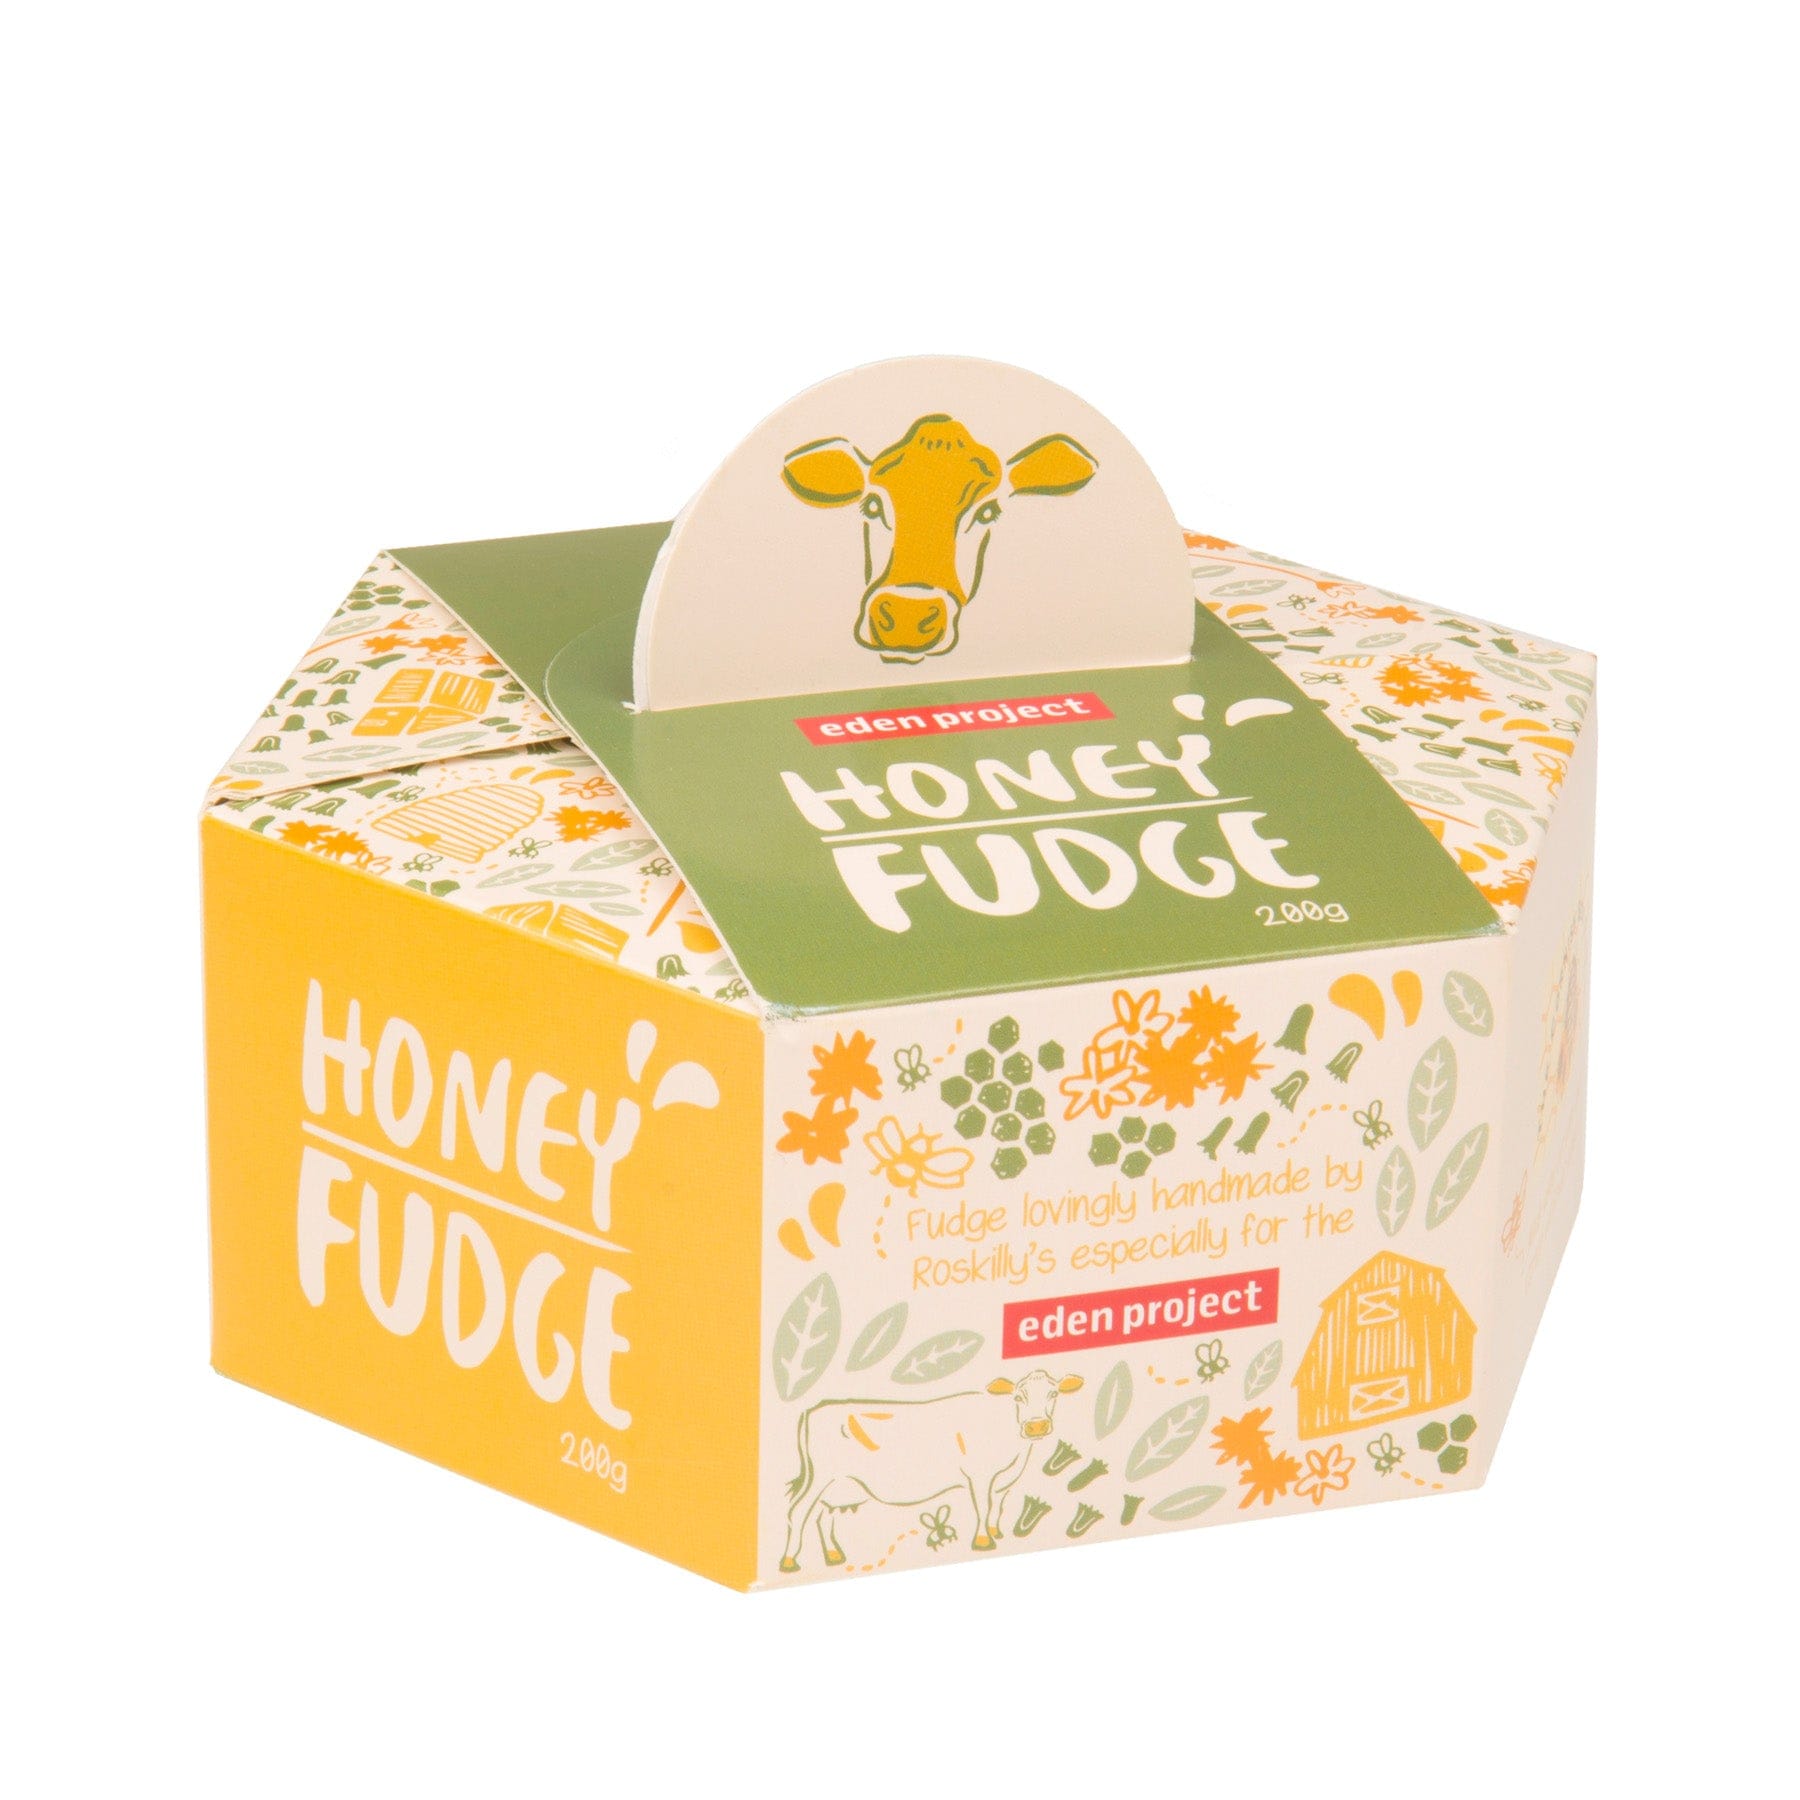 Cornish honey fudge 200g